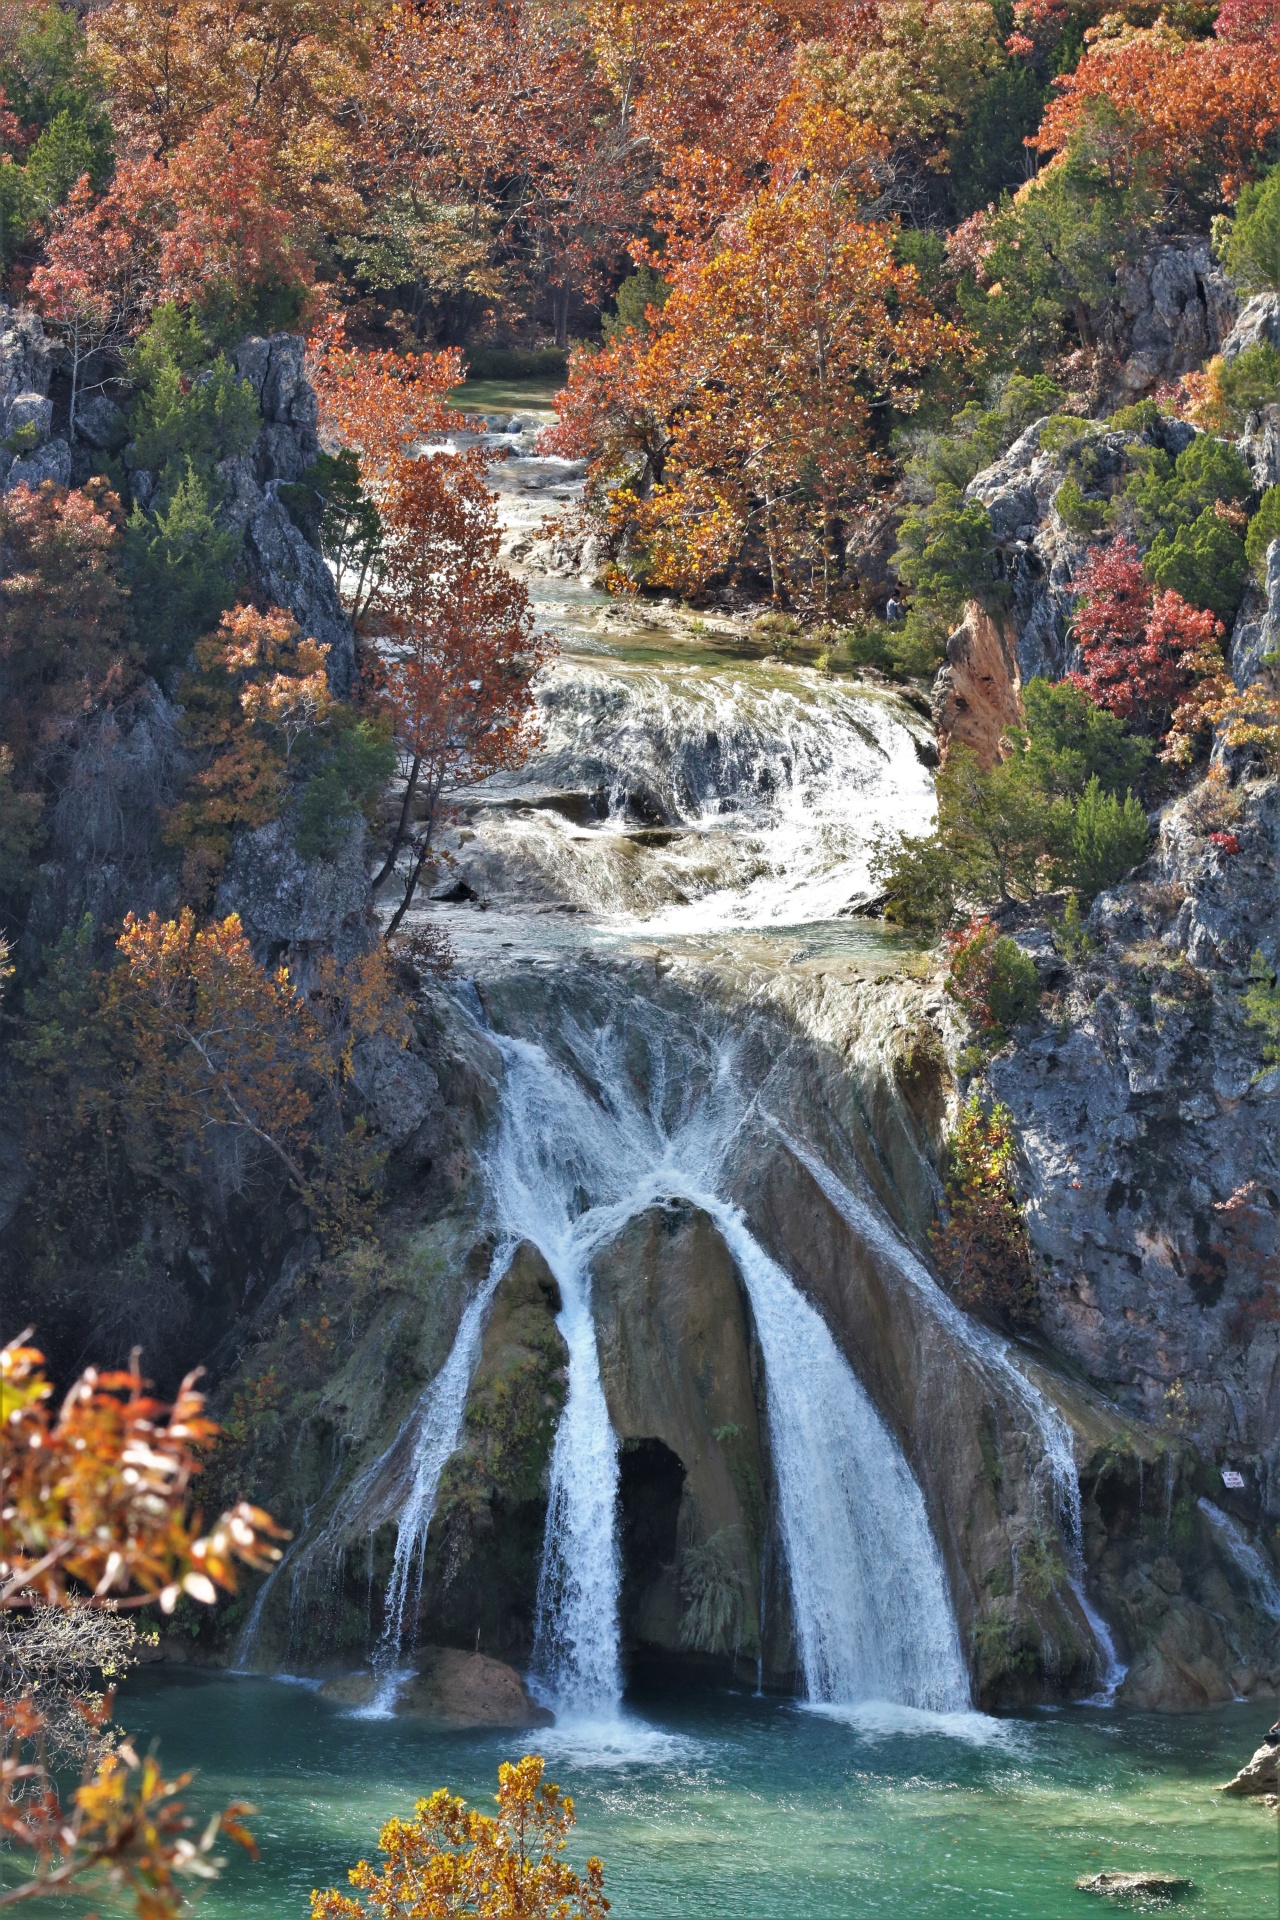 Turner Falls Waterfall In Fall 2